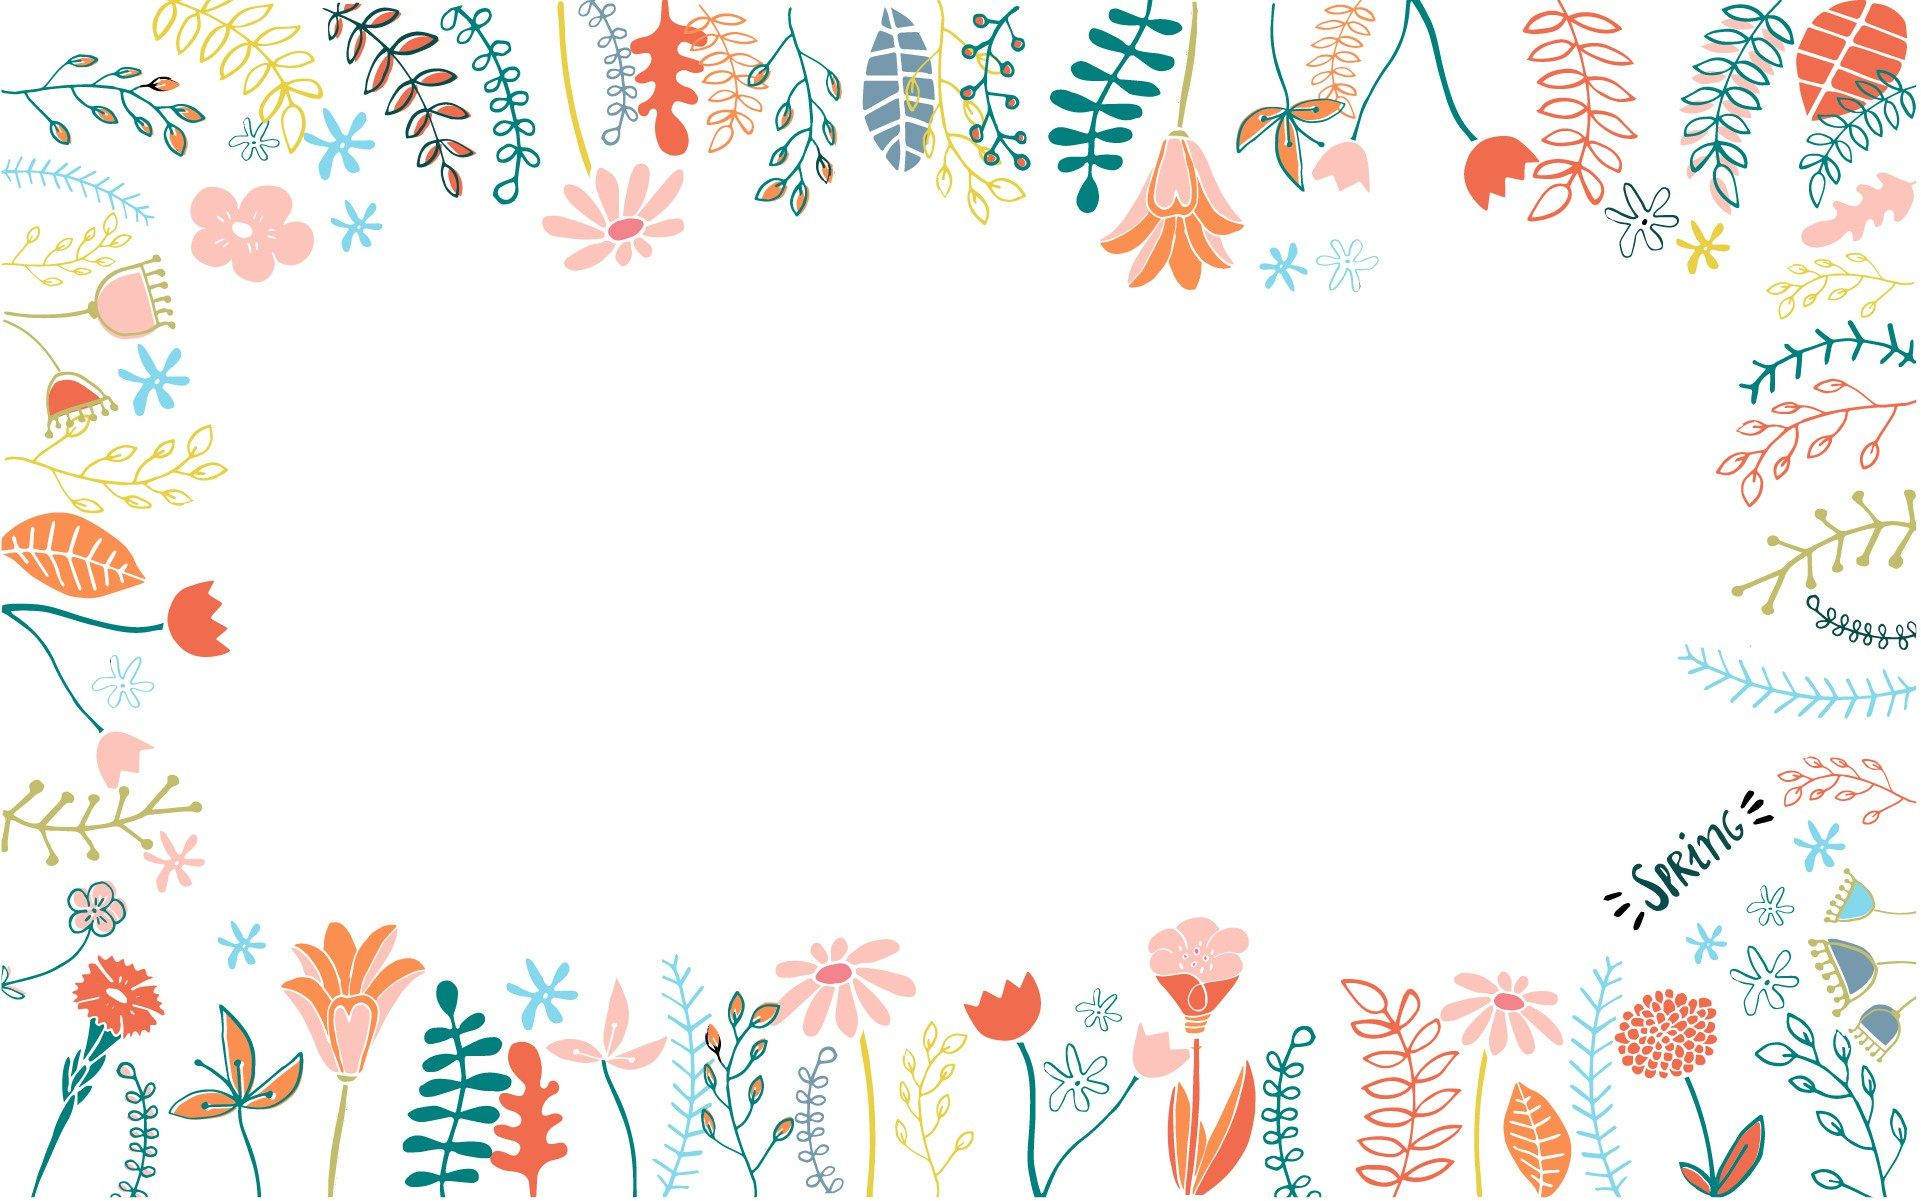 Spring-inspired Floral Desktop Background